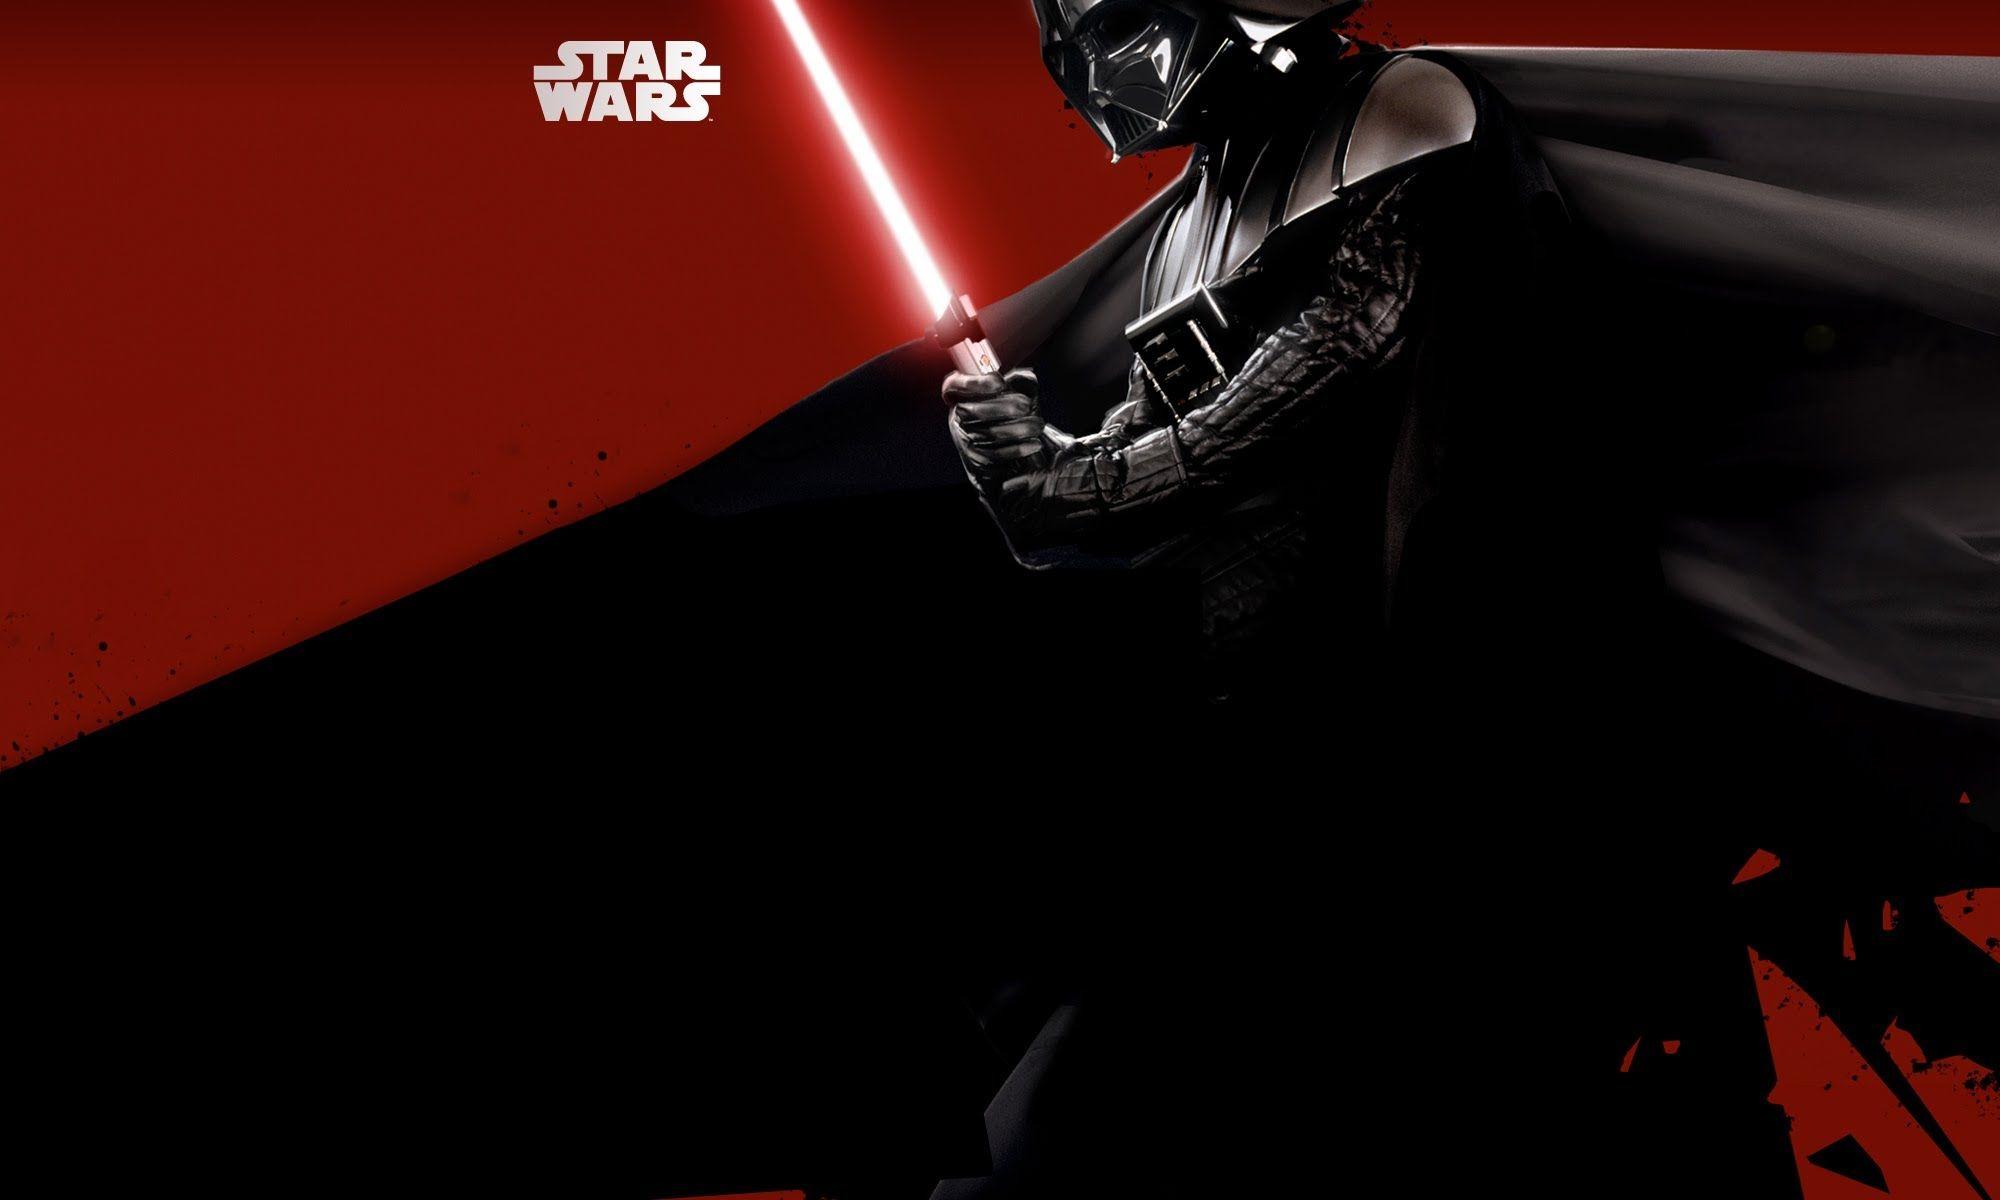 Darth Vader Wallpaper iPhone 1024x768PX Wallpaper Darth Vader